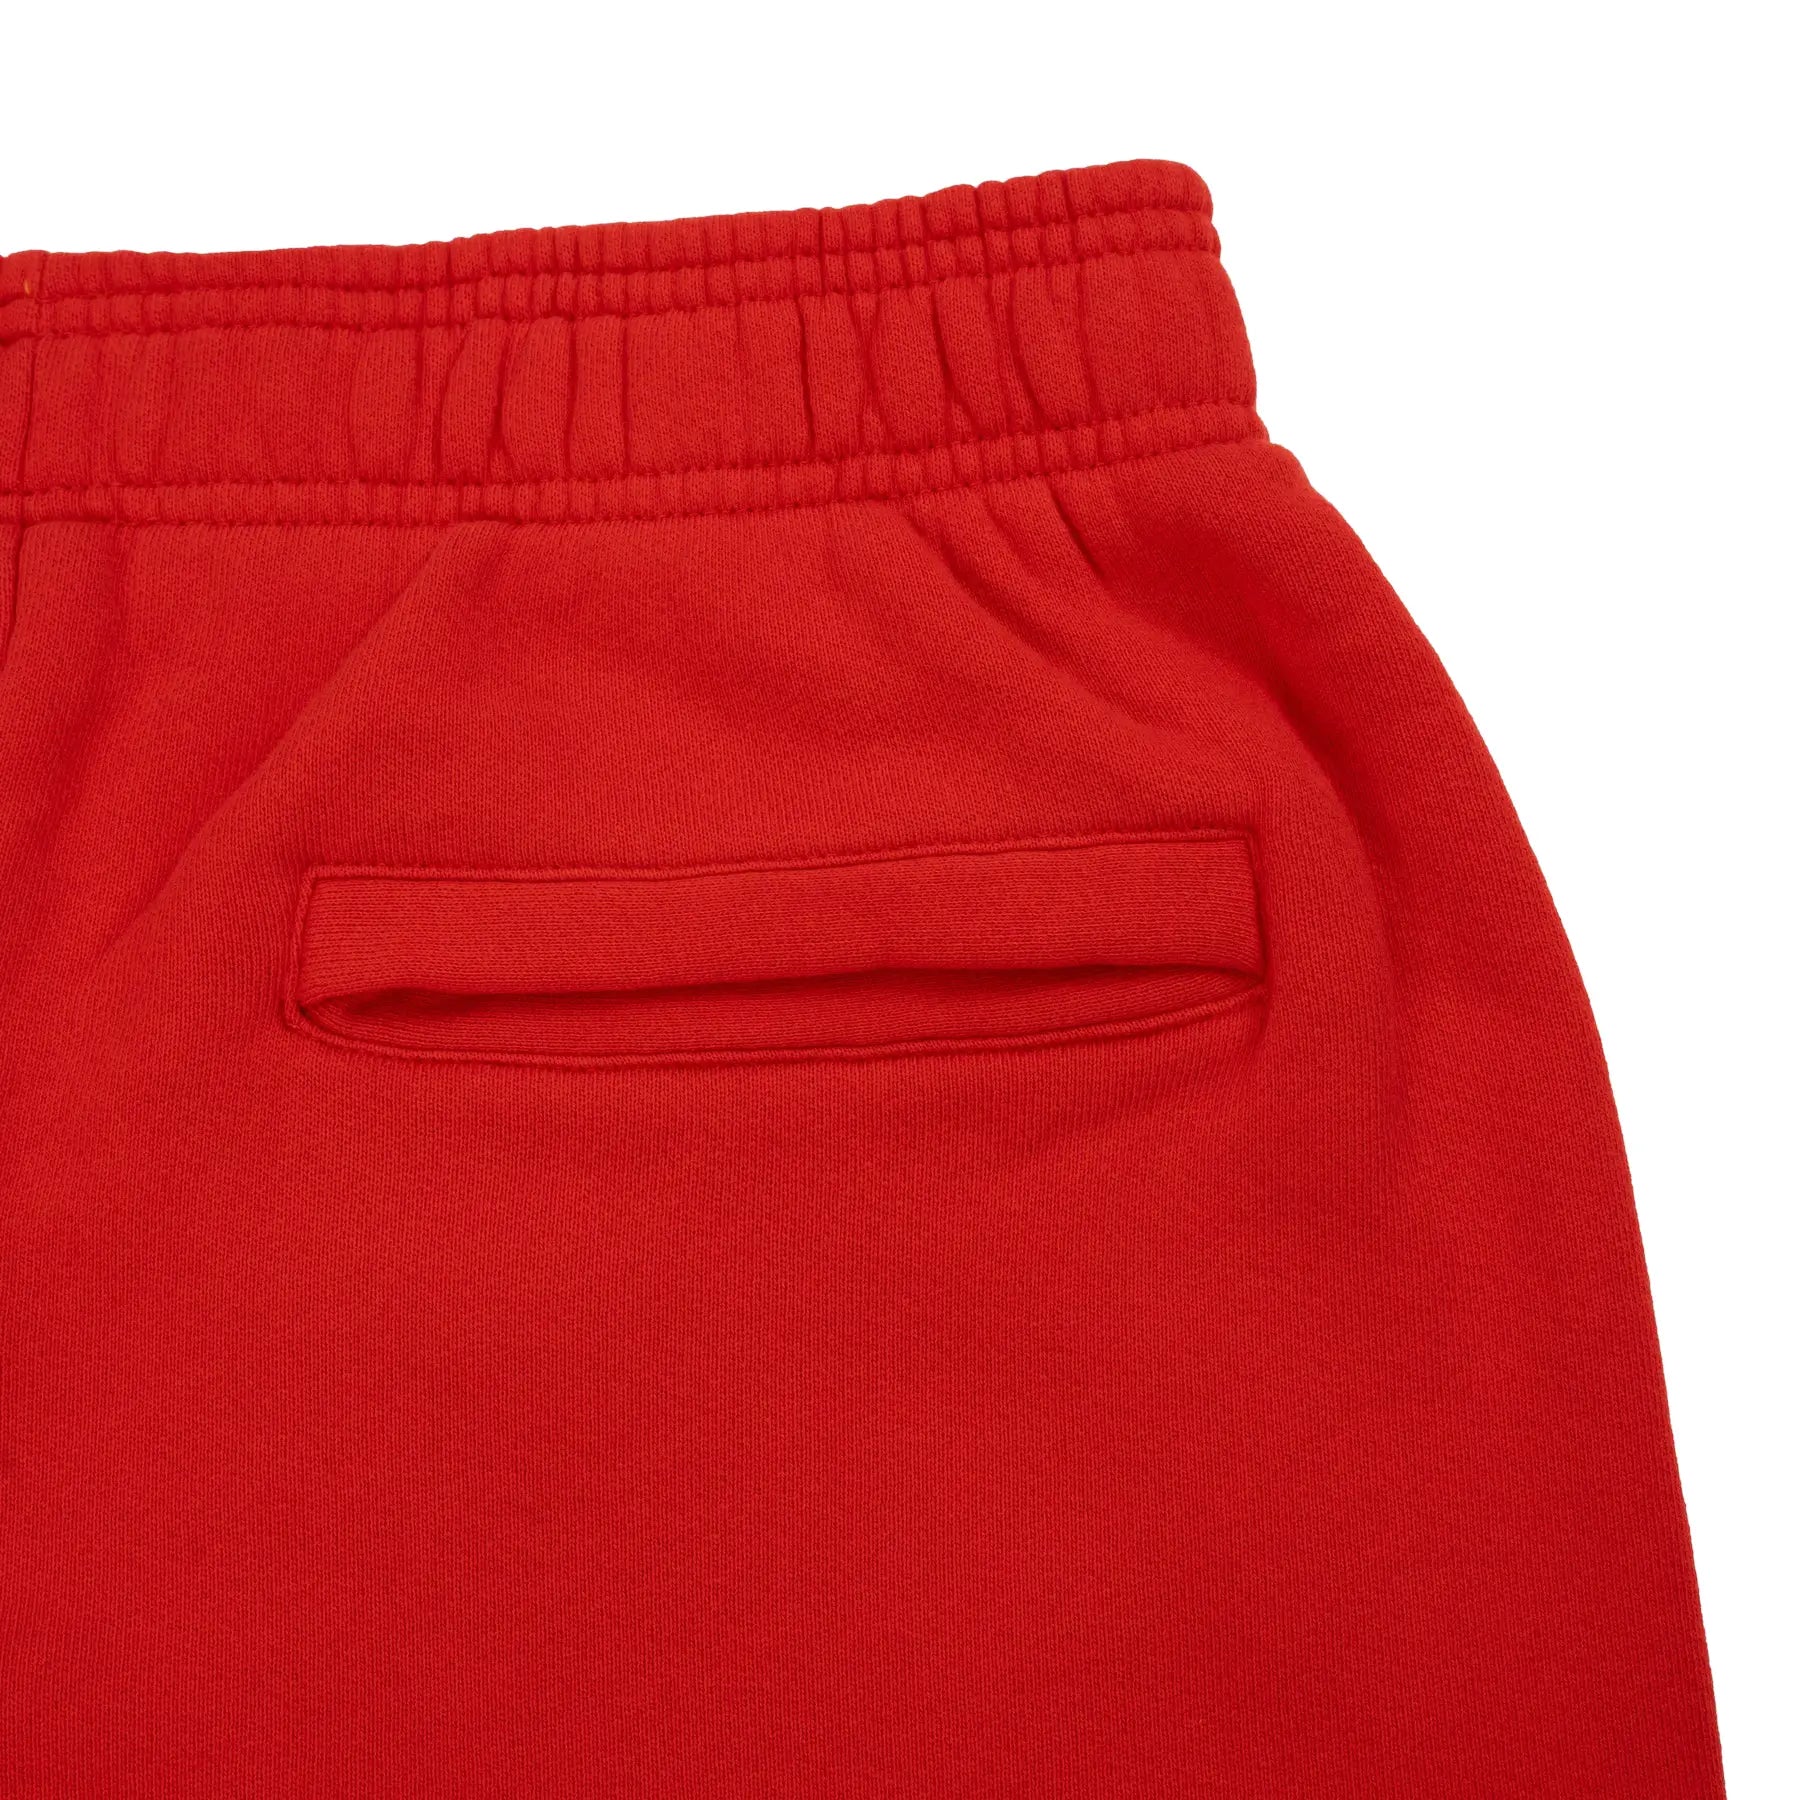 Back pocket view of Eric Emanuel EE Basic Red Sweatpants